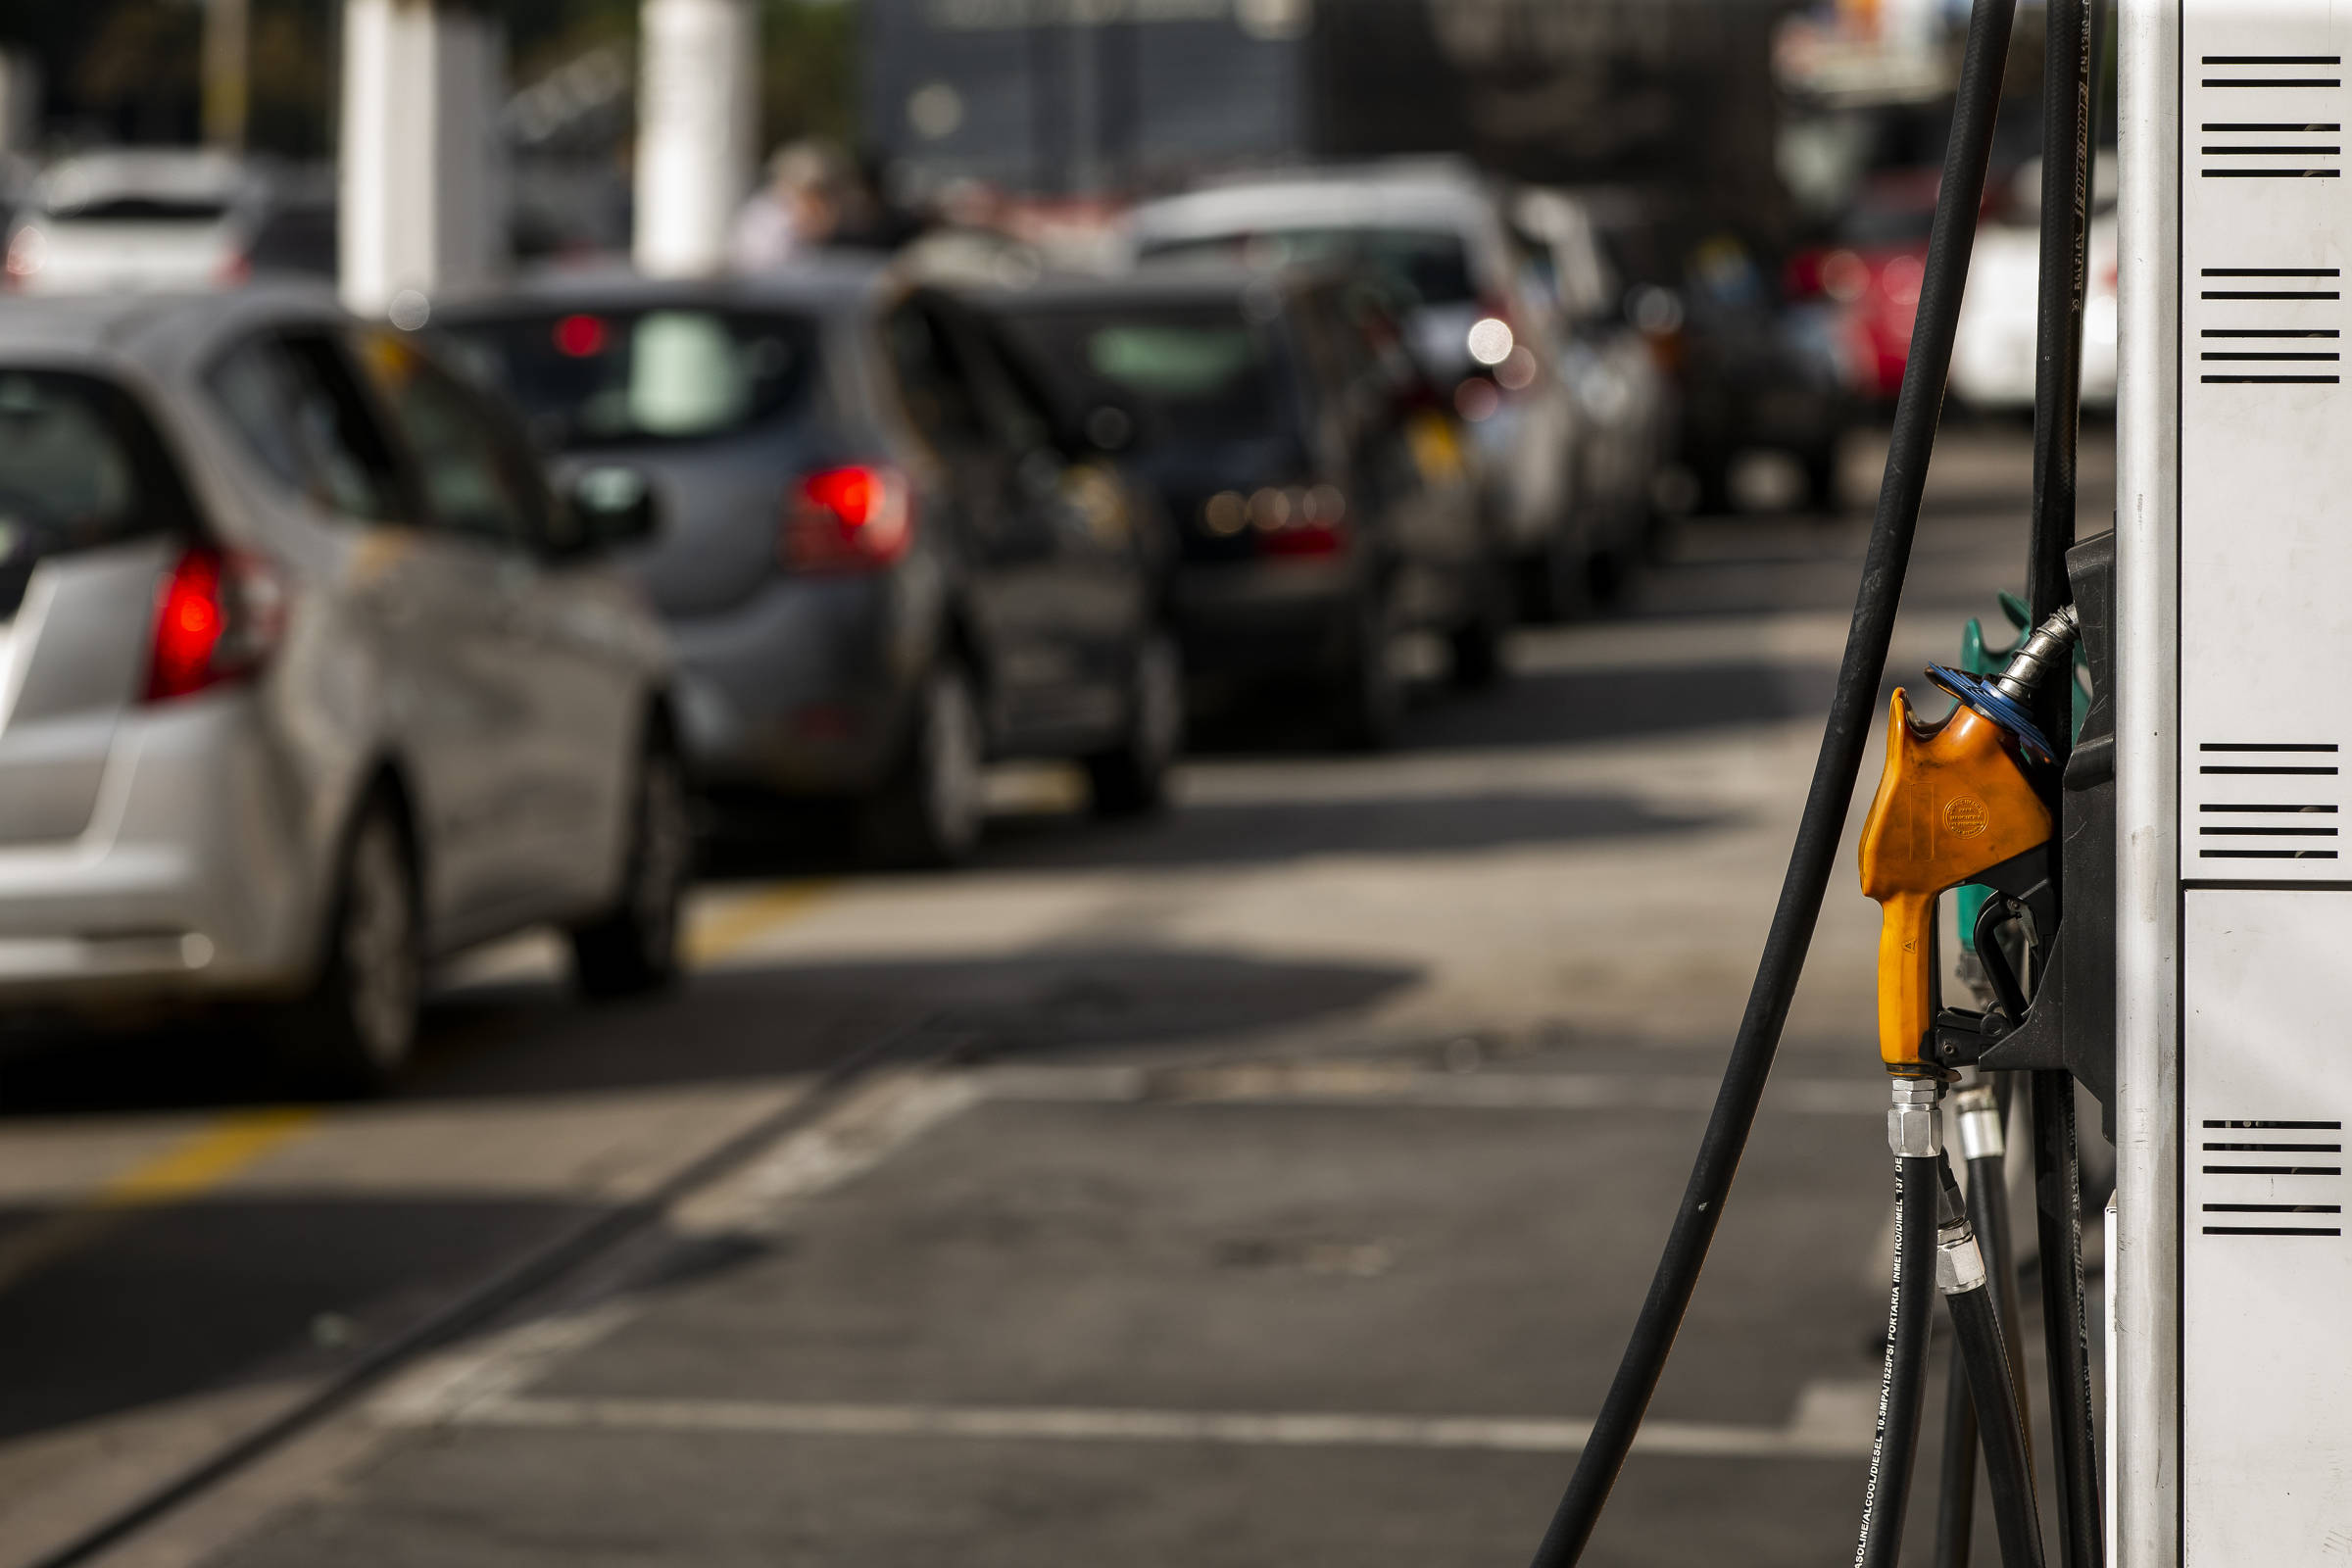 Usinas de etanol querem substituir baterias em carros elétricos - 13/11/2020 - Mercado